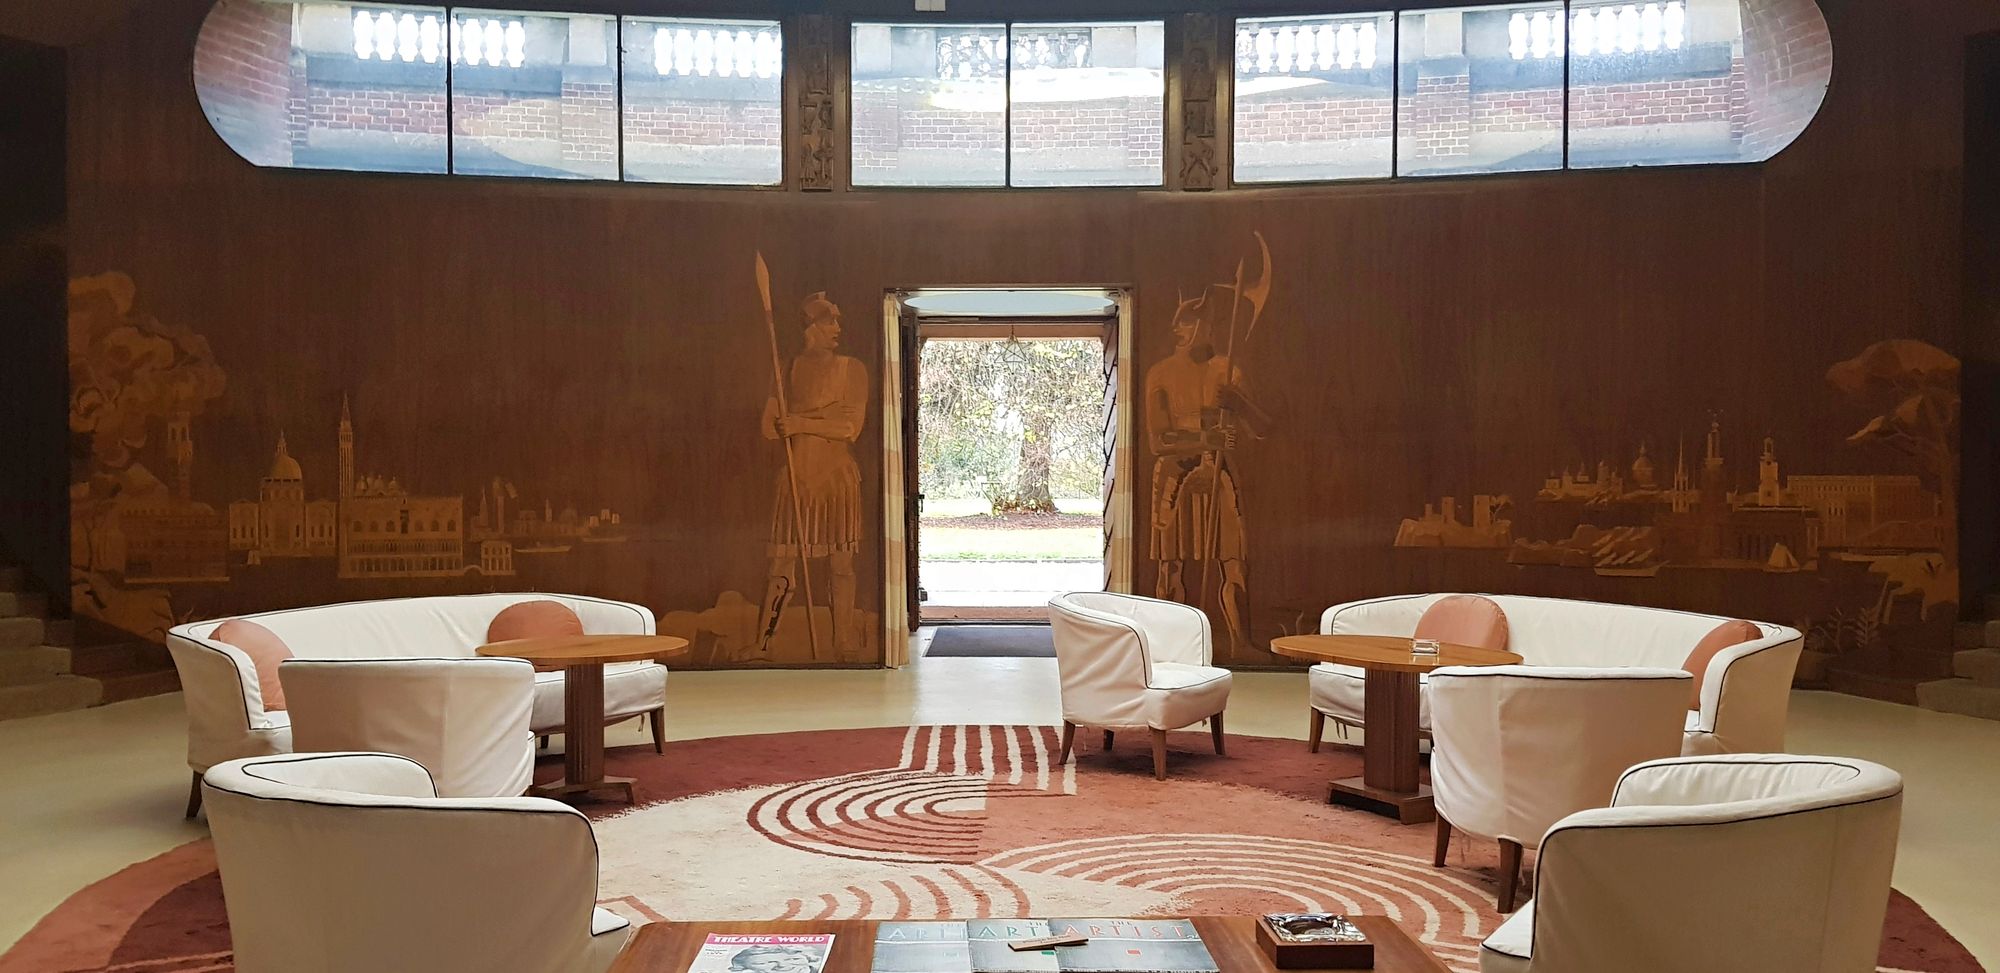 Elthamin palatsin upea Art Deco -tyyliin sisustettu halli esiintyy jaksossa Murhenäytelmä. © Maarit Ritvanen